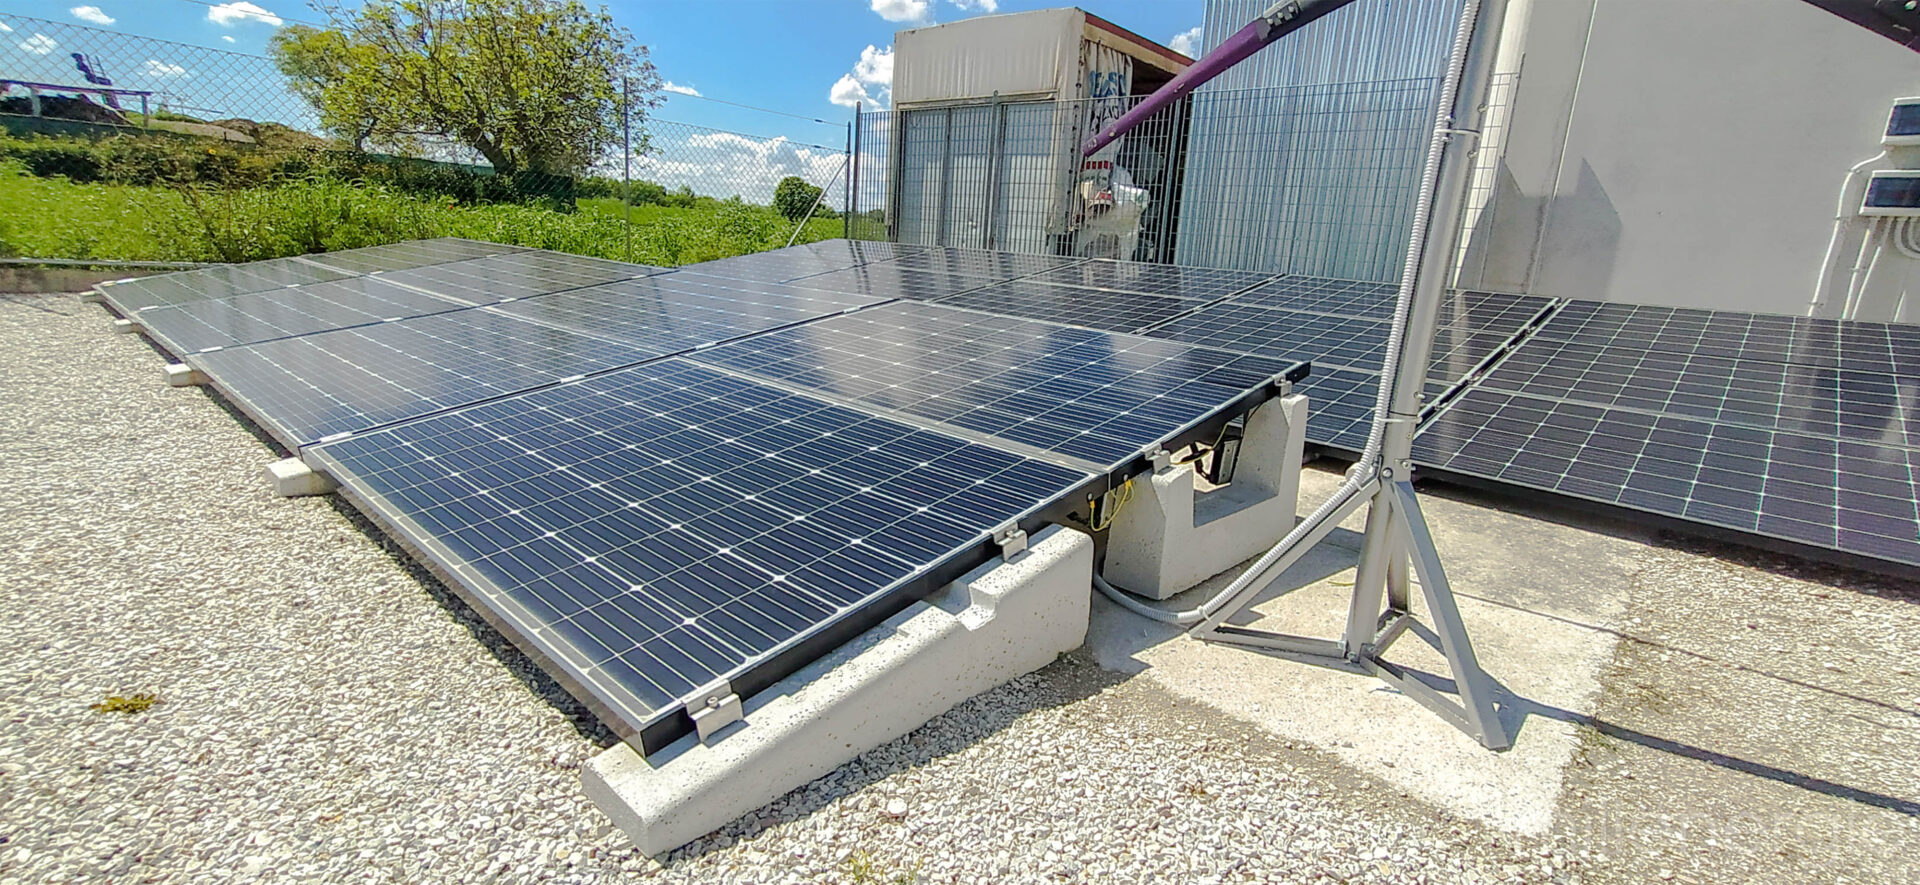 Impianto fotovoltaico zavorre